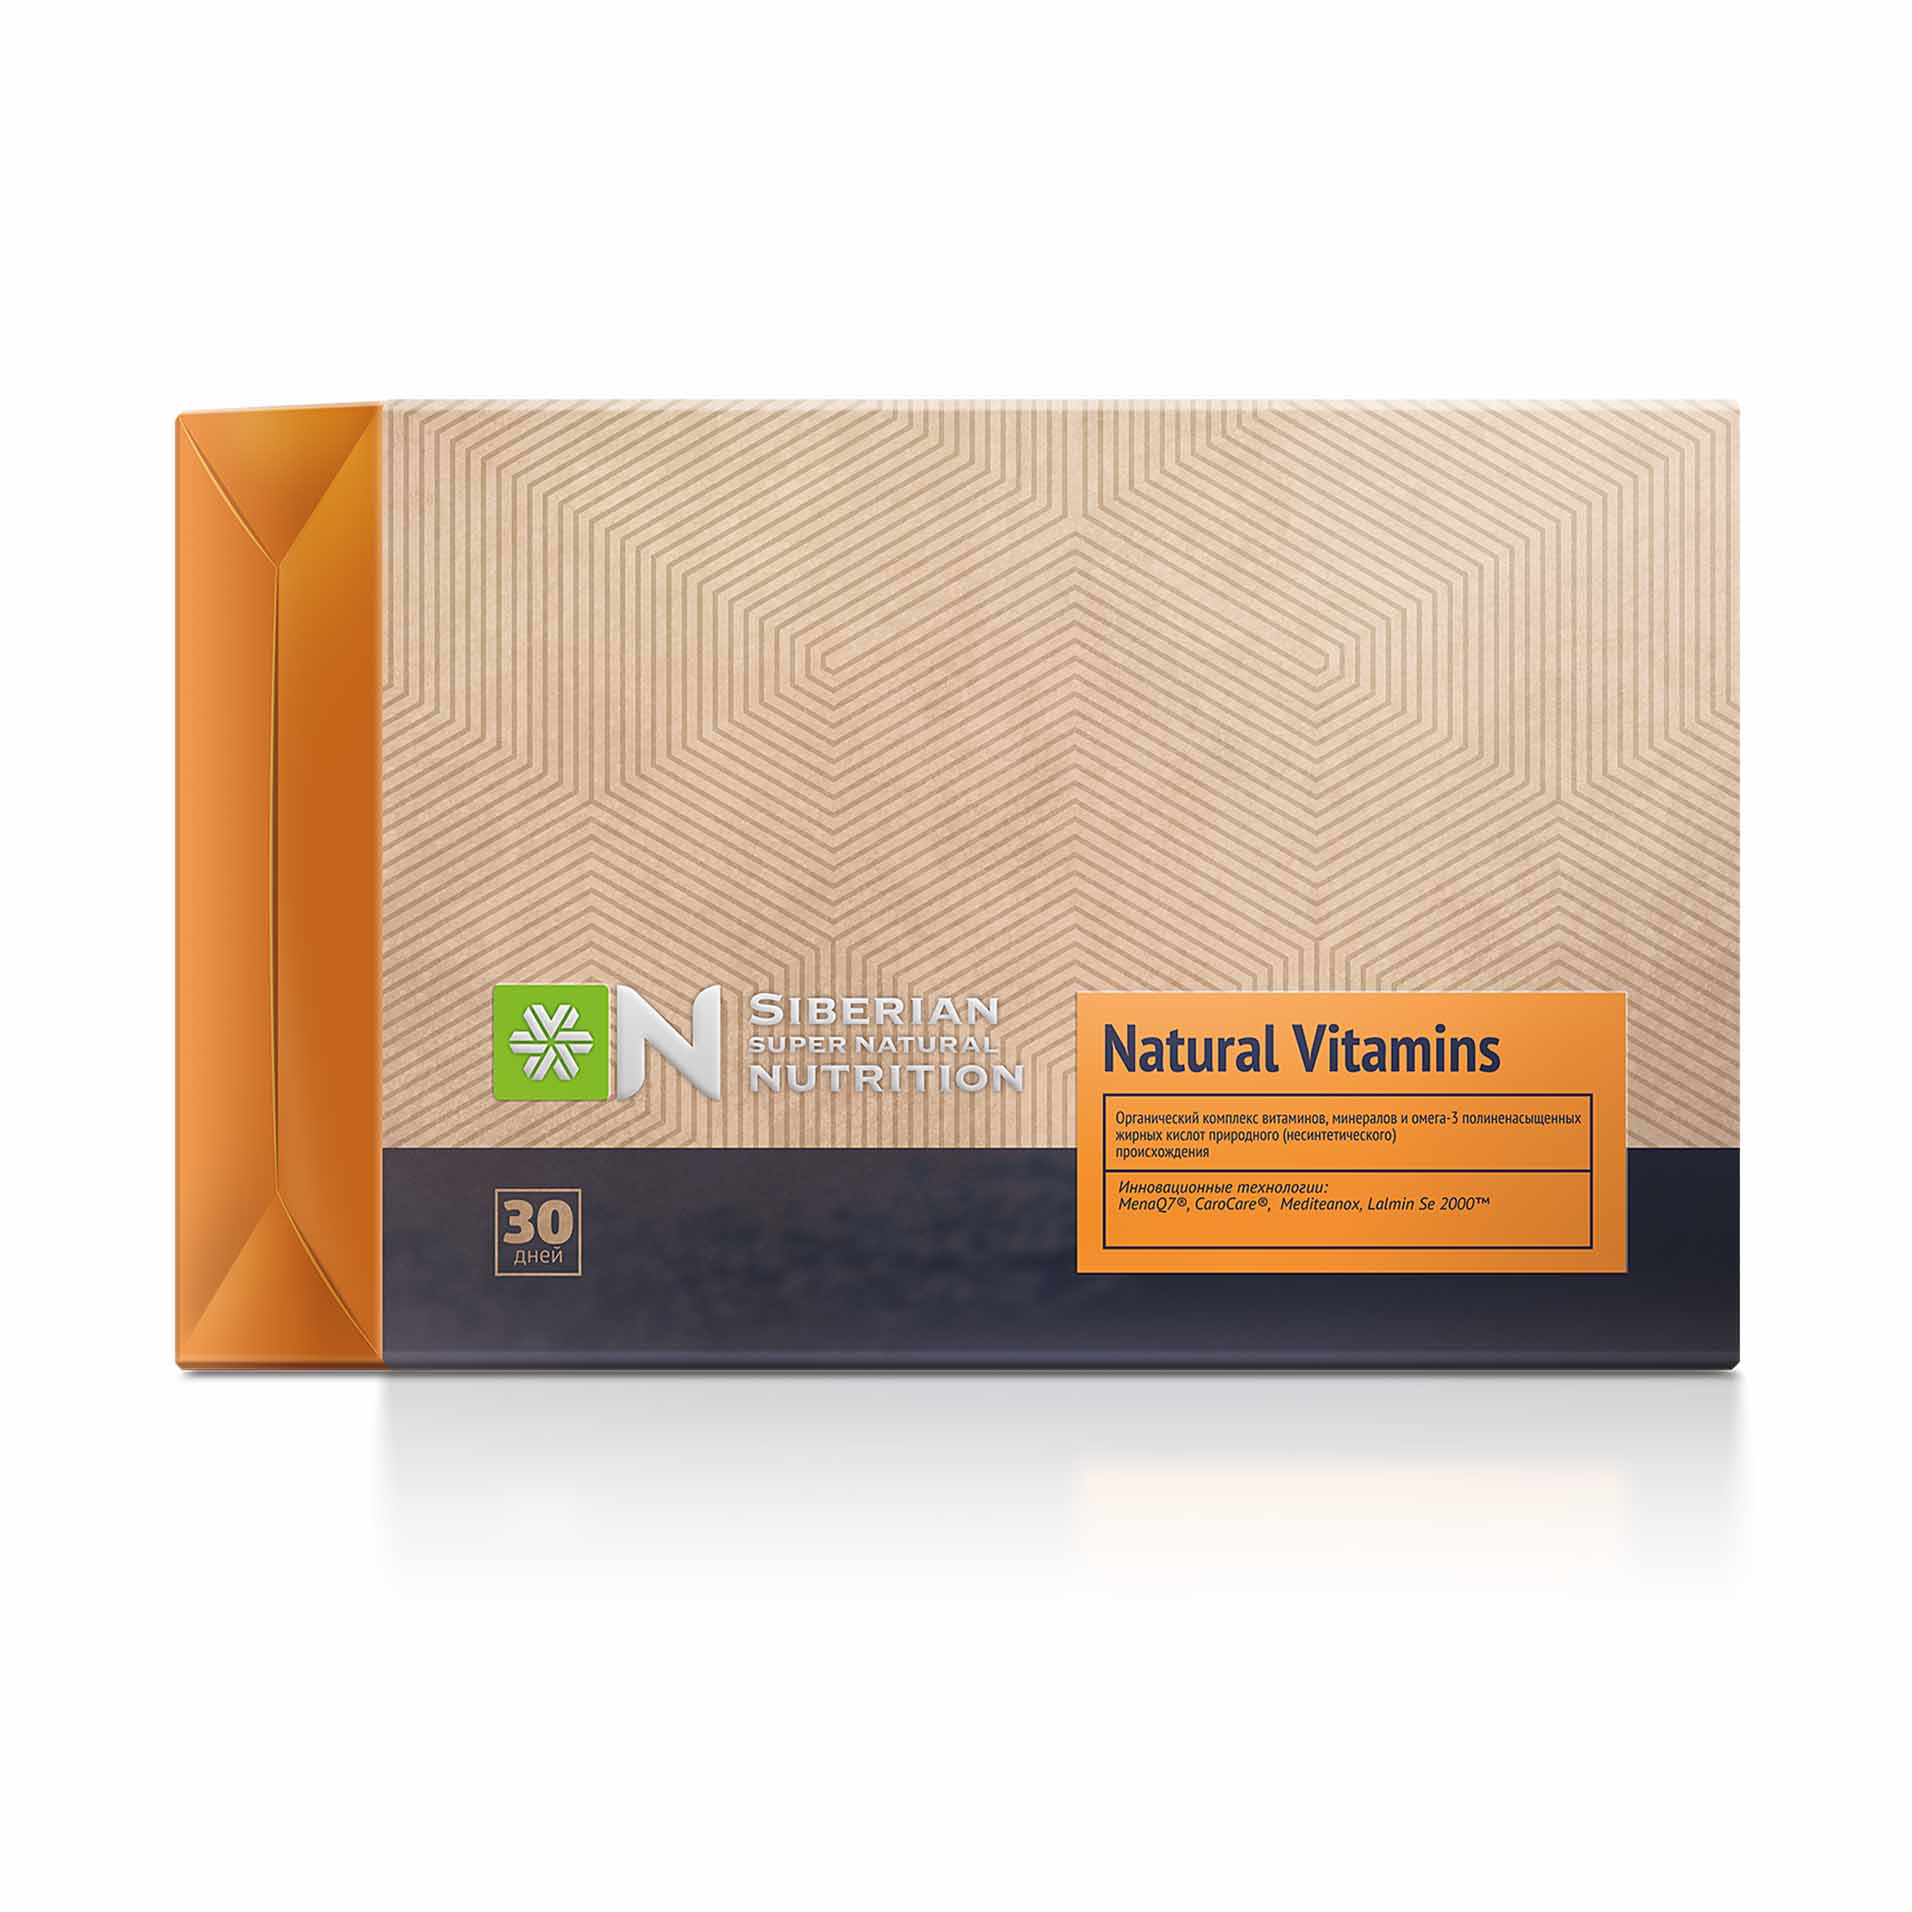 Изображение отсутствует.
			Купить Natural Vitamins - Siberian Super Natural Nutrition ECO //  // 